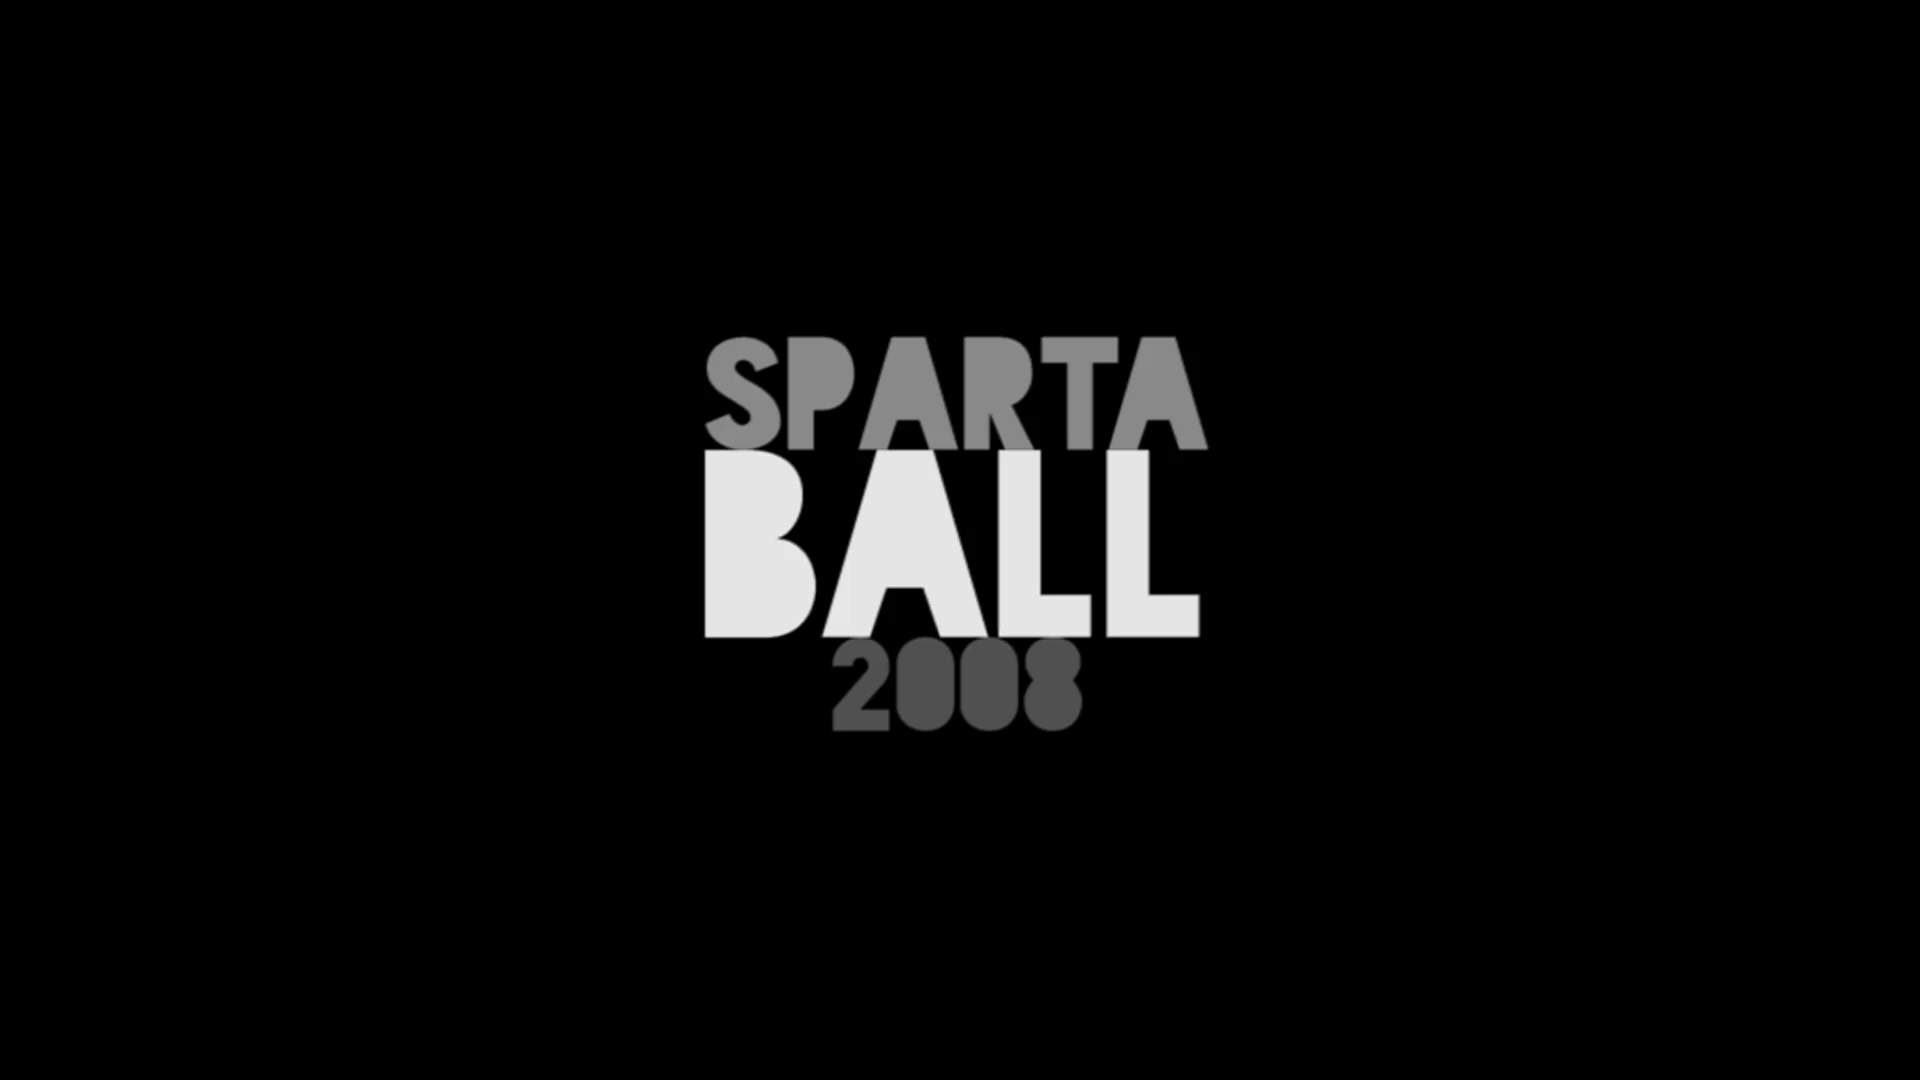 Video Art, Sparta Ball